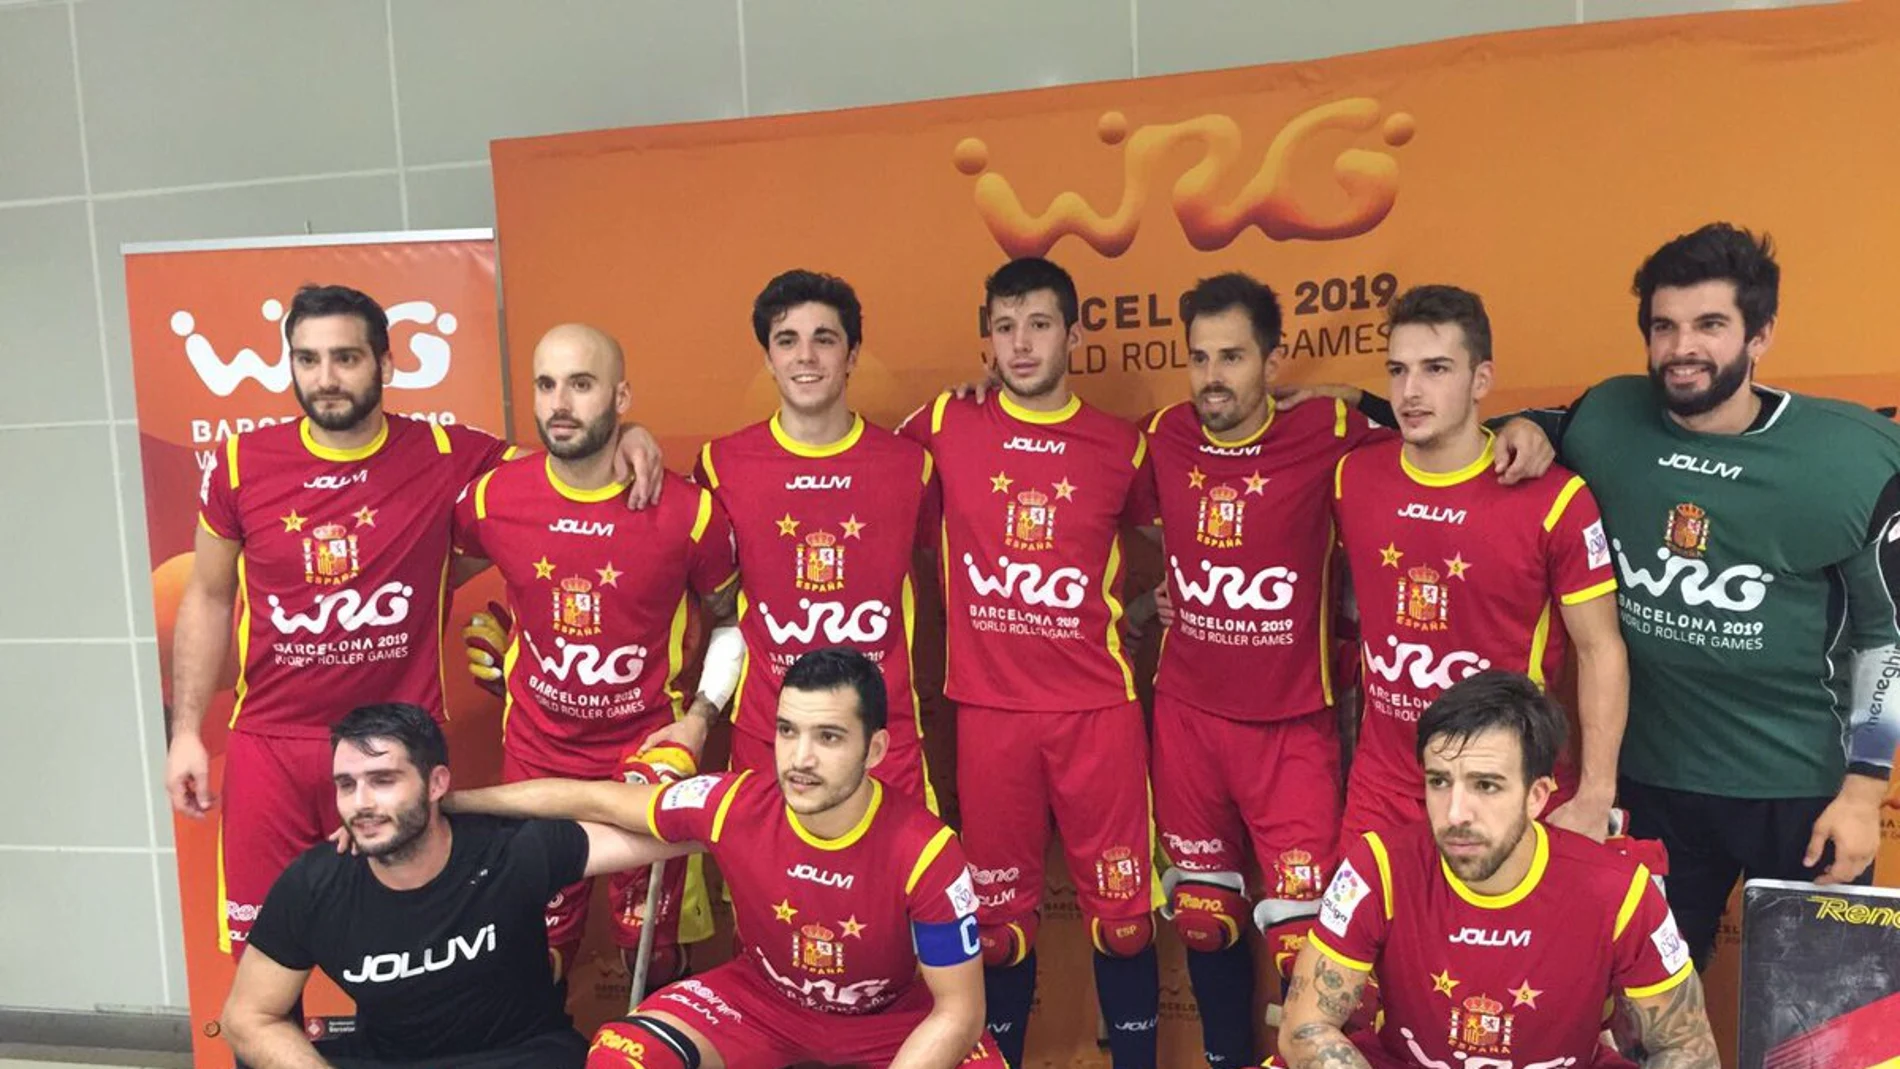 La selección española de hockey patines, durante los Roller Games